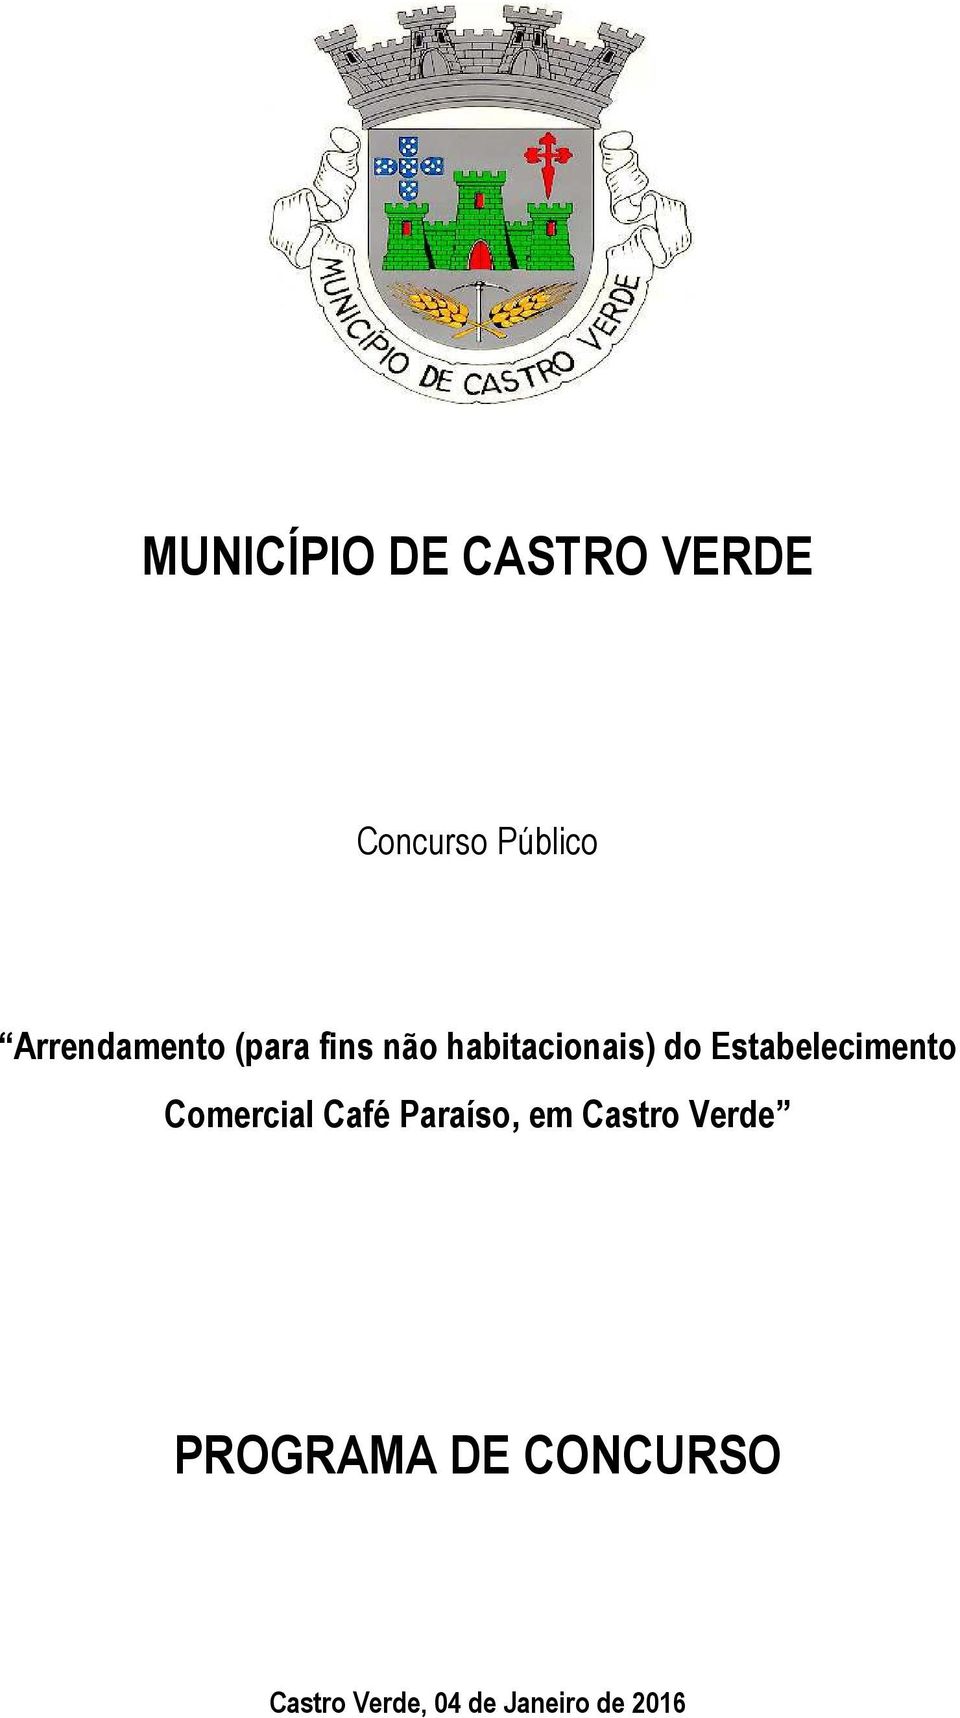 Estabelecimento Comercial Café Paraíso, em Castro